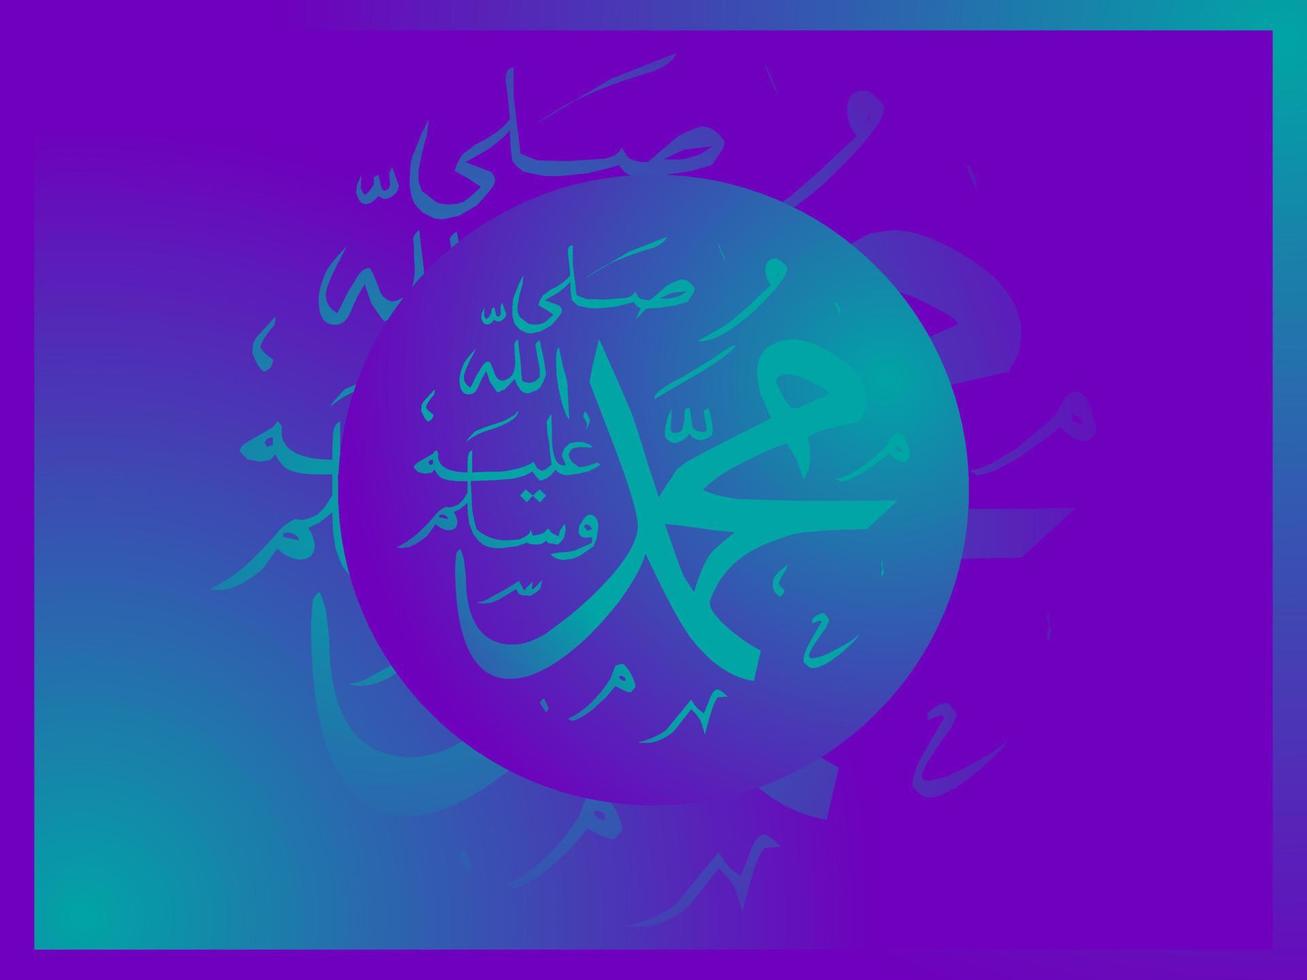 arabiska och islamiska kalligrafi av profeten Muhammed fred vare med honom traditionell och modern islamisk konst kan användas för många ämnen som mawlid, el nabawi. översättning profeten Muhammed vektor